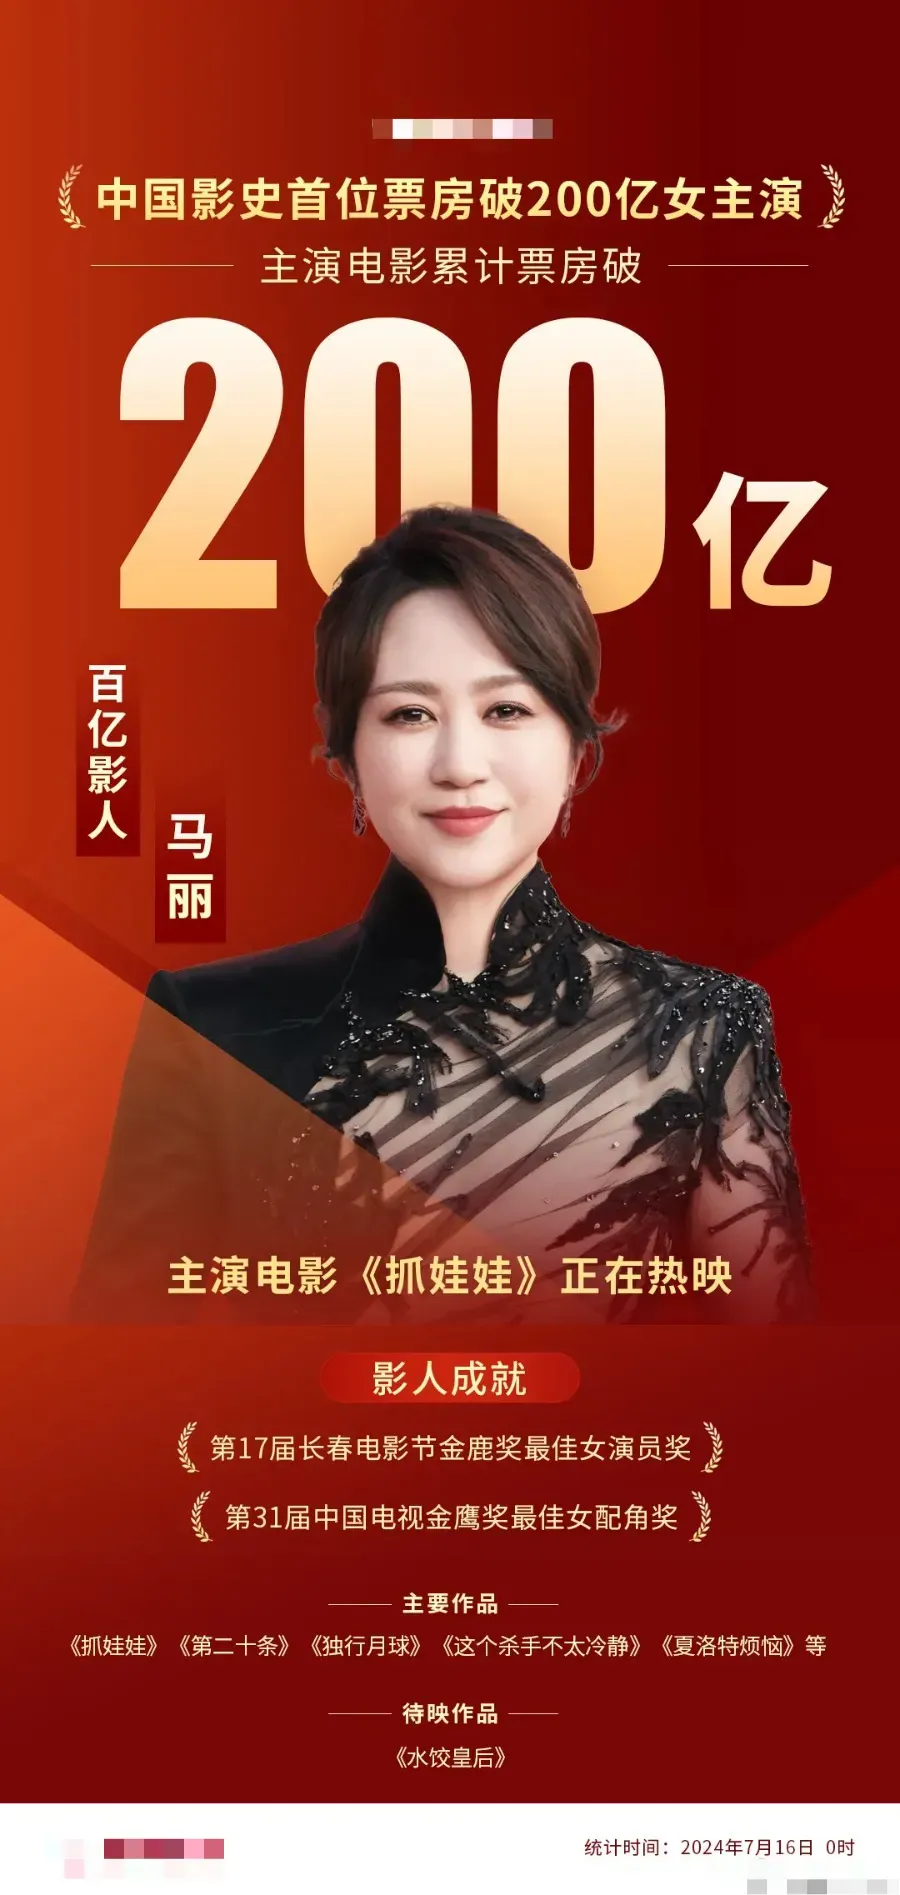 马丽成为中国影史首位票房突破200亿的女演员